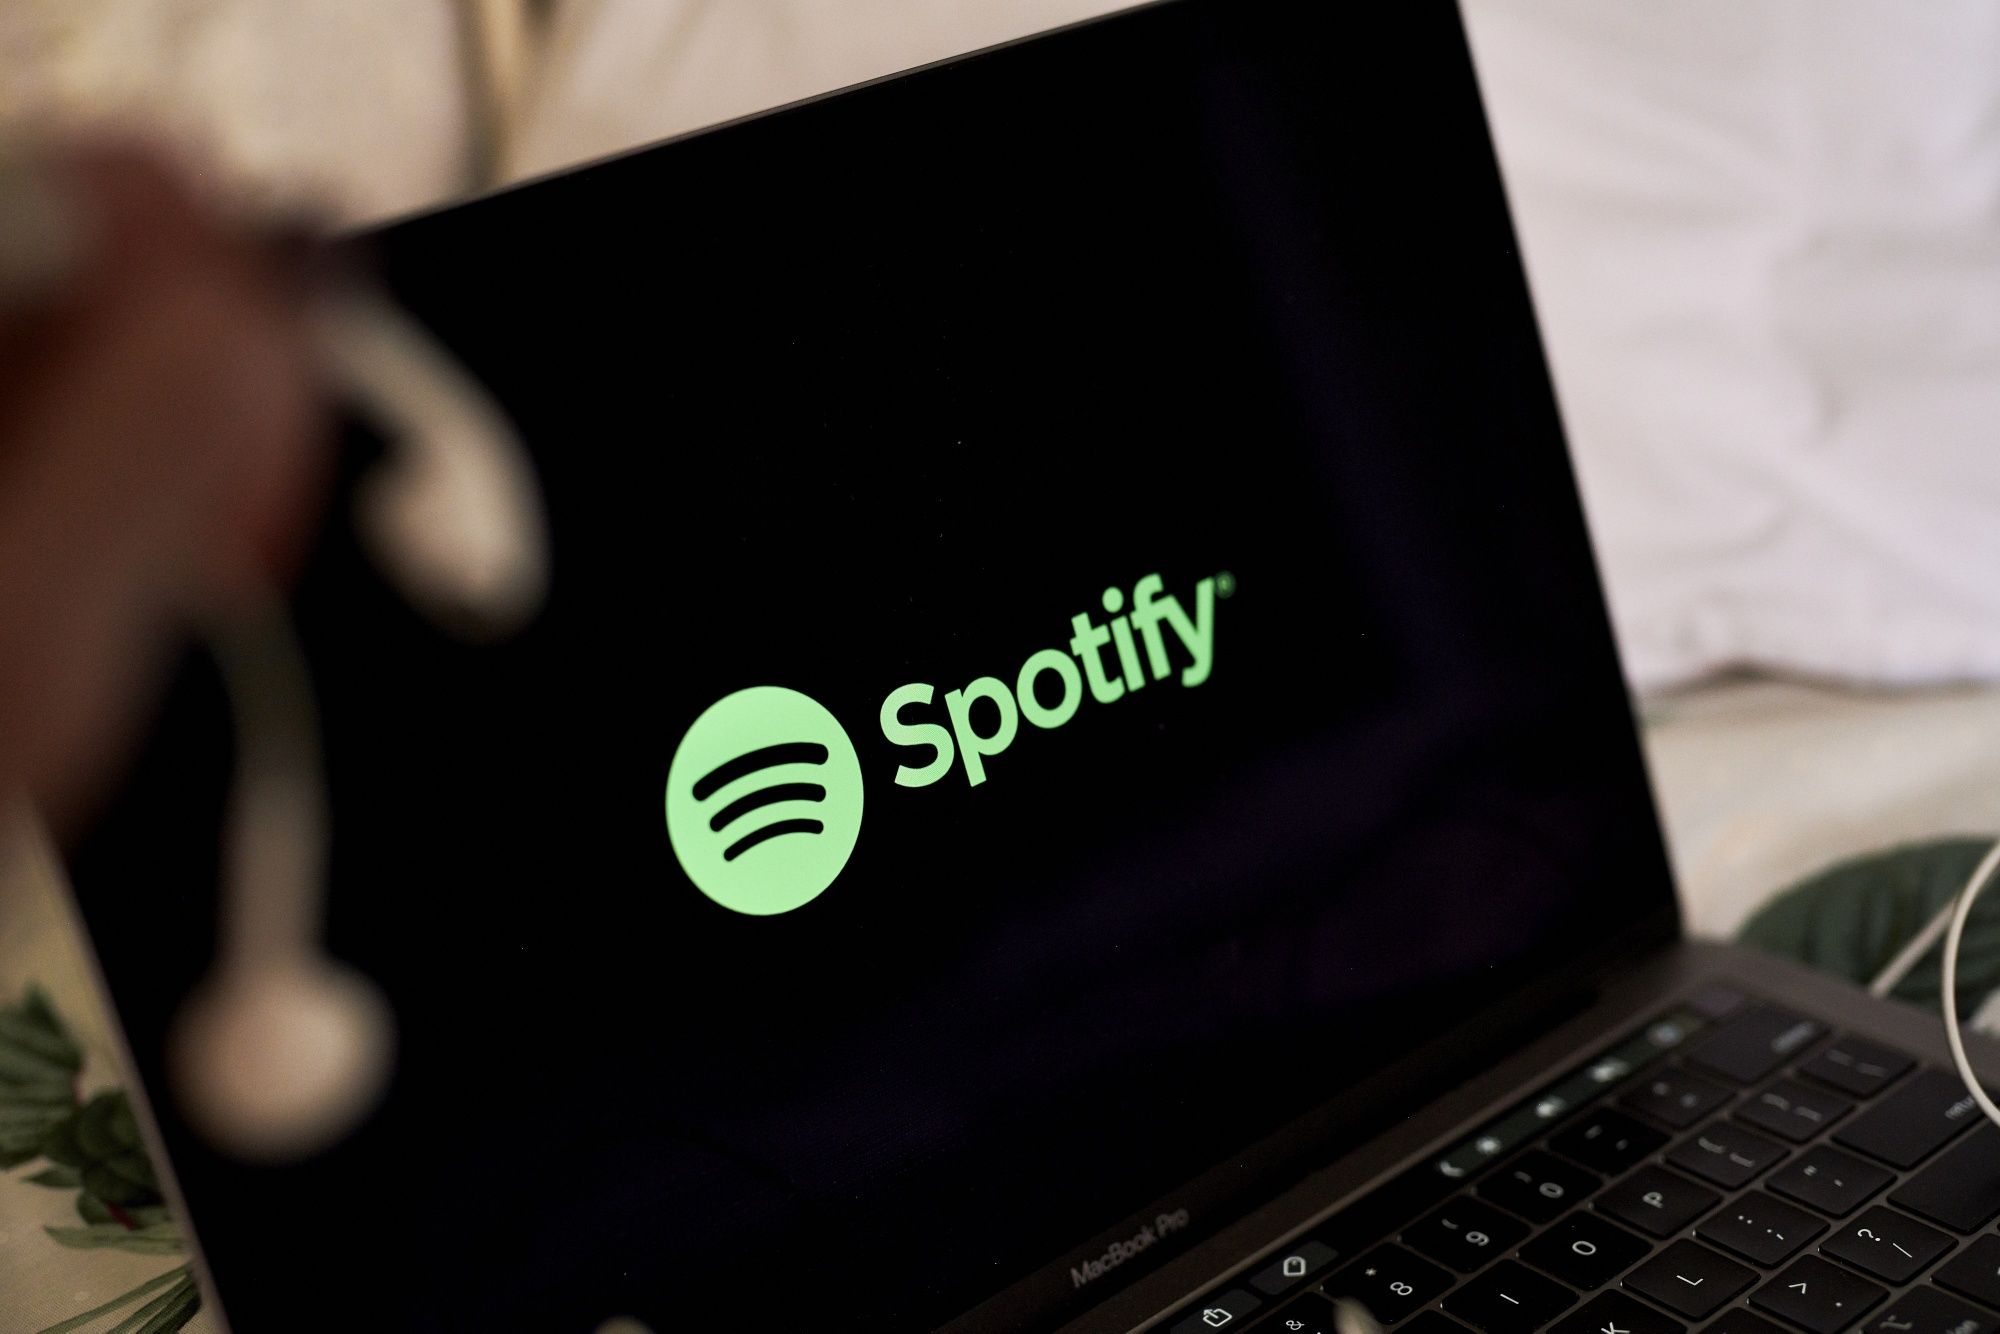 Spotifty despide cientos de empleados de la división de podcasts a nivel mundial, qué pasará con el negocio